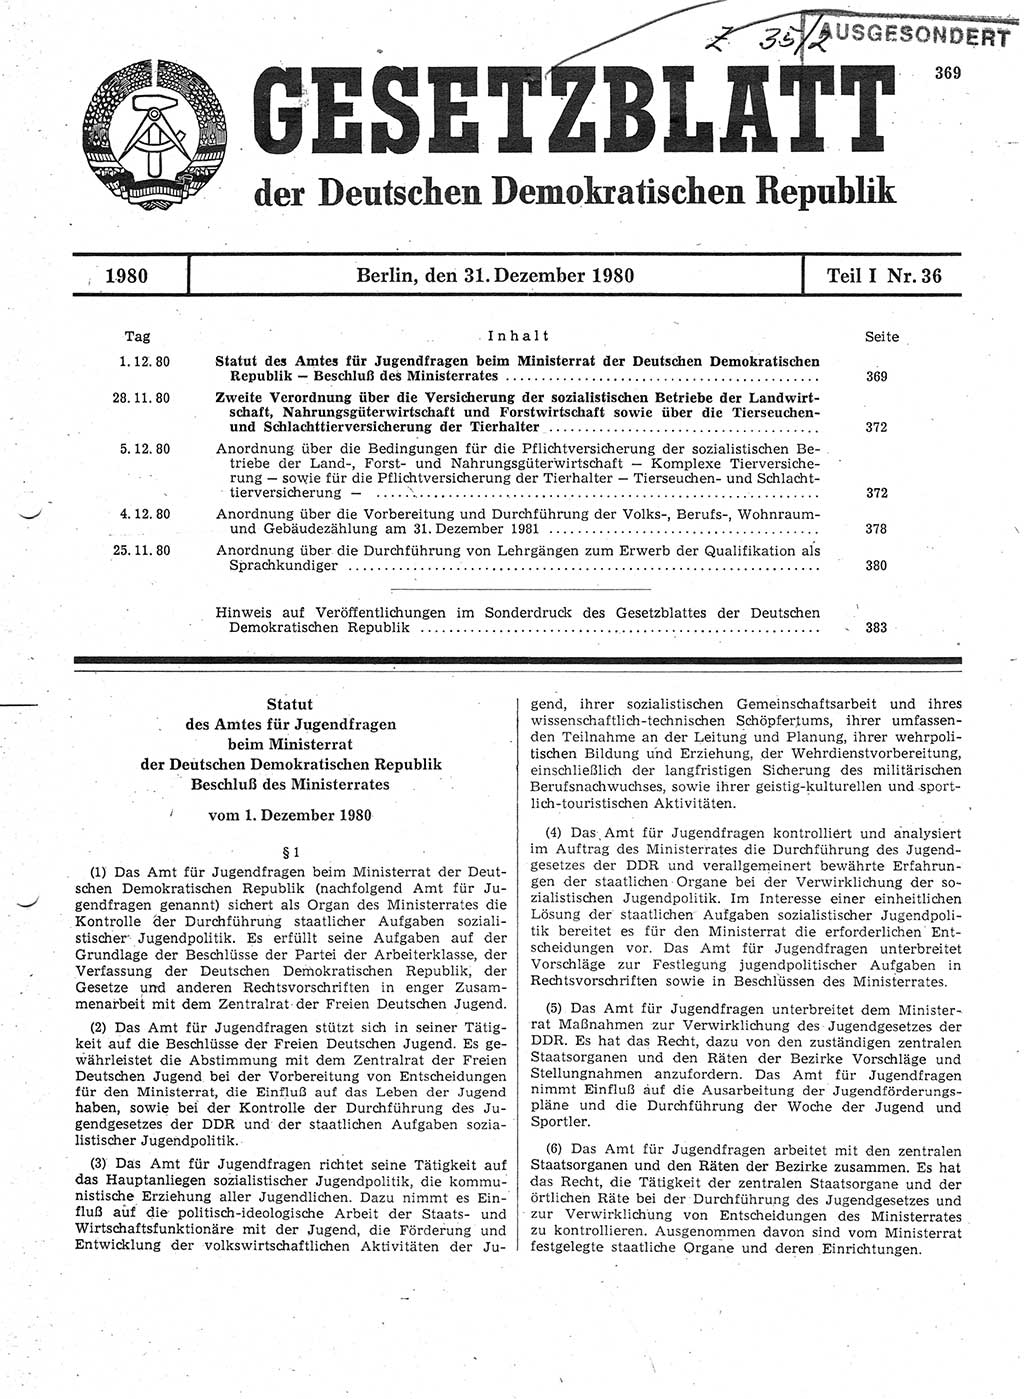 Gesetzblatt (GBl.) der Deutschen Demokratischen Republik (DDR) Teil Ⅰ 1980, Seite 369 (GBl. DDR Ⅰ 1980, S. 369)